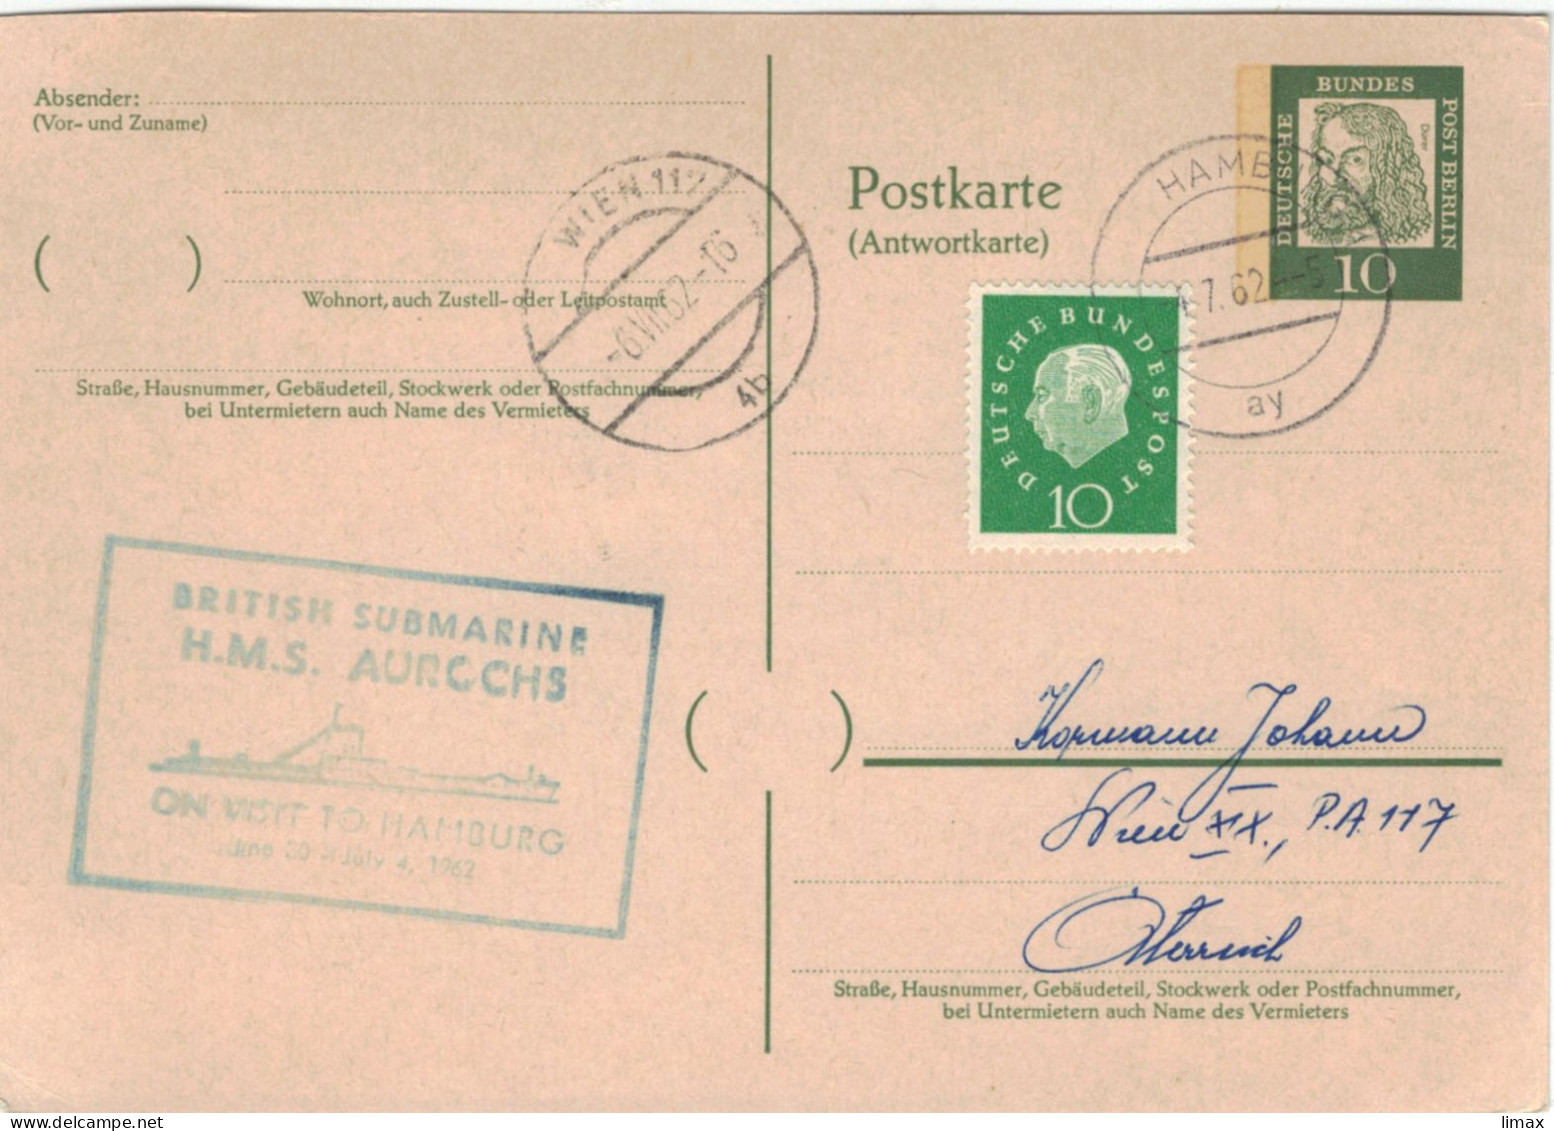 Ganzsache Dürer Hamburg 4.7.1962 > Wien - British Submarine HMS Aurochs - Stempel Ohne PLZ [weil Neue PLZ Kommen] - Postkarten - Gebraucht